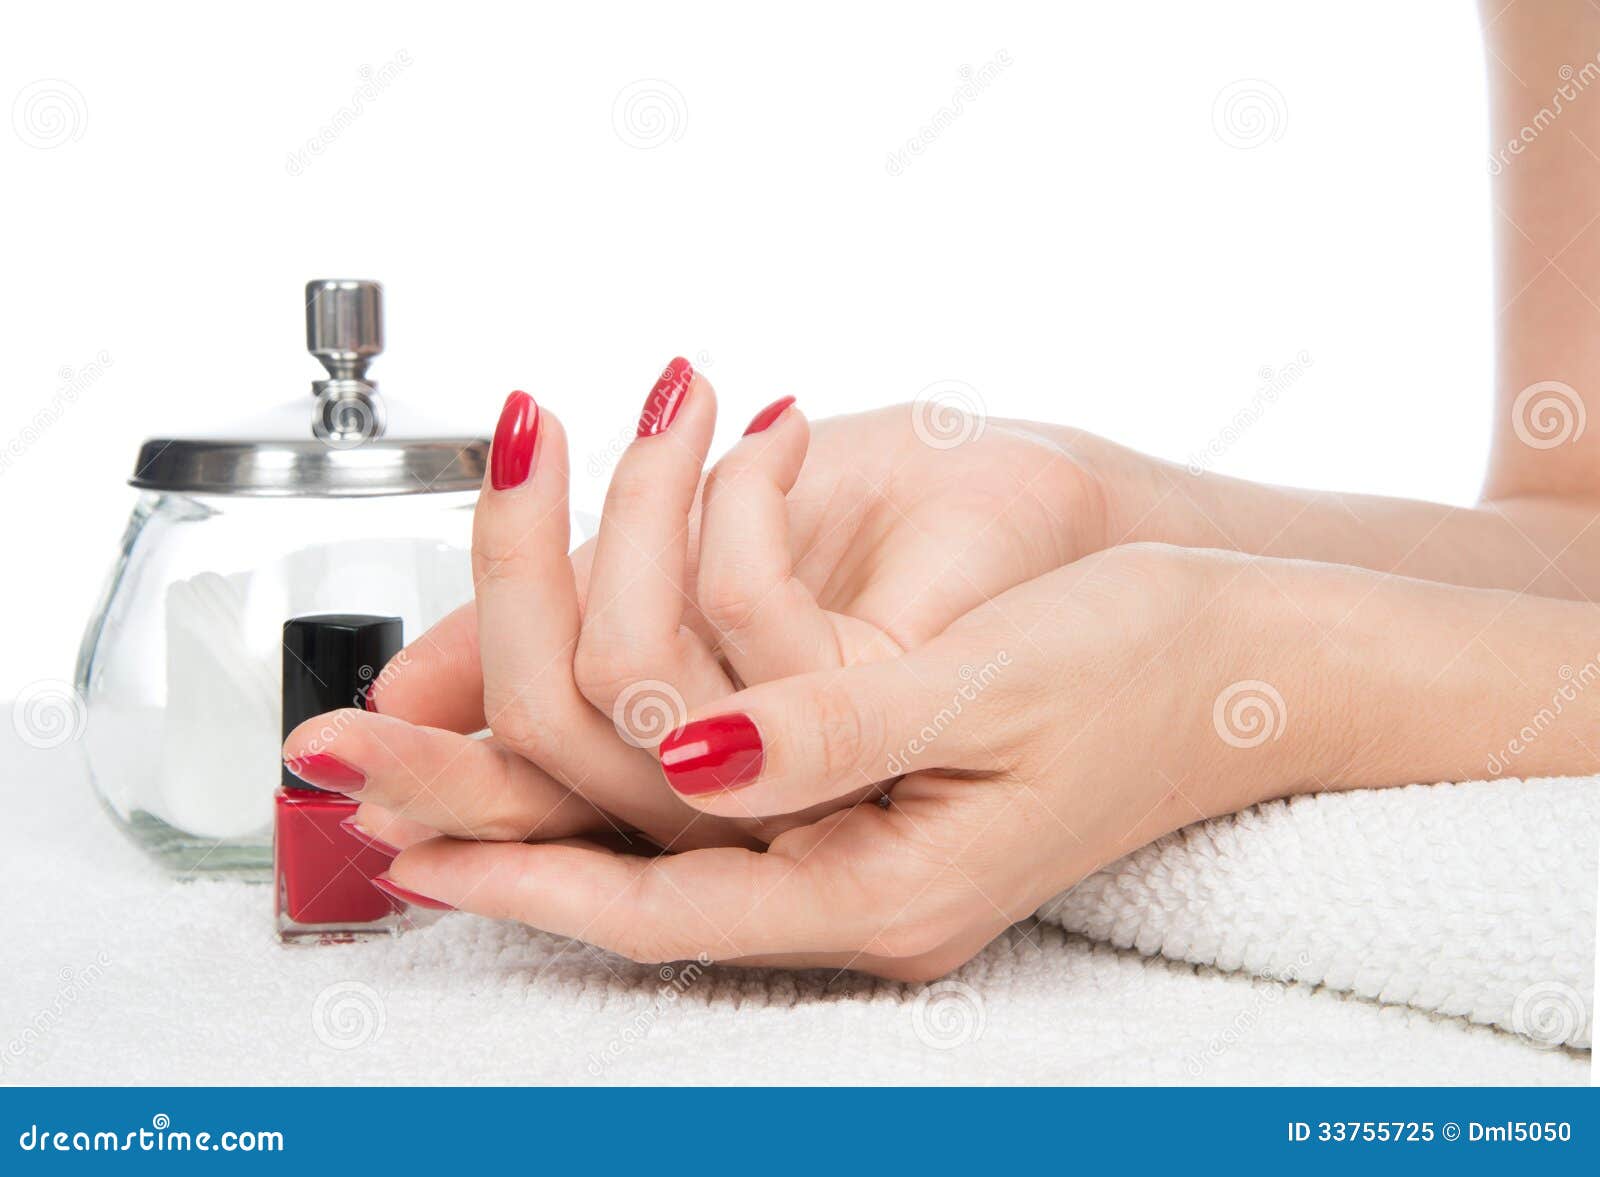 manicure pedicure salon business plan